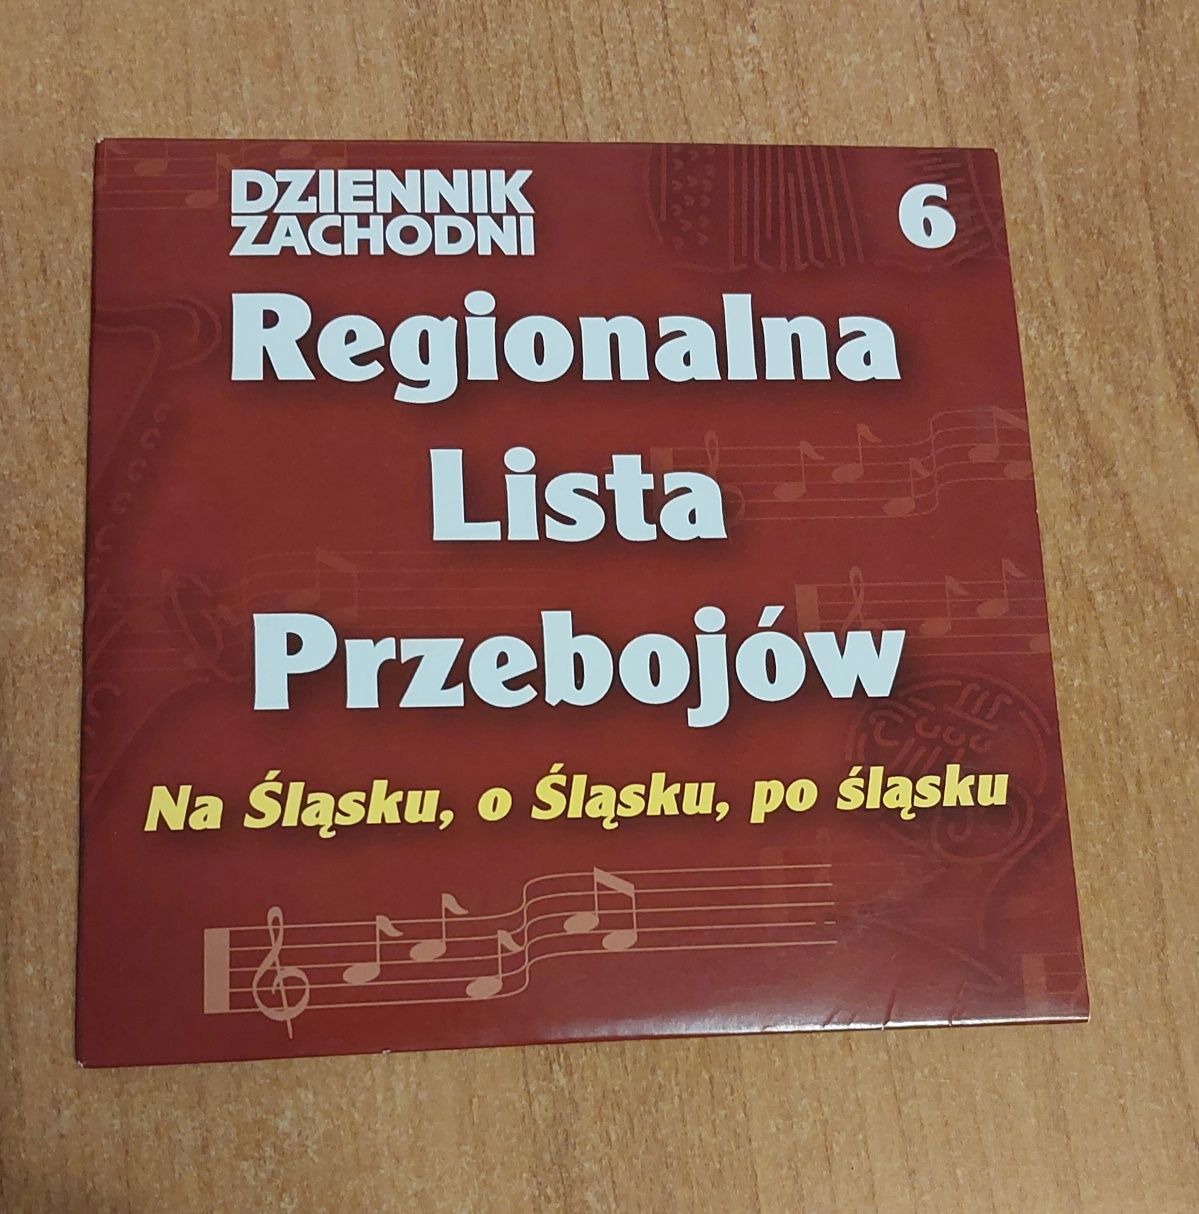 Regionalna lista przebojów  na Śląsku płyta CD